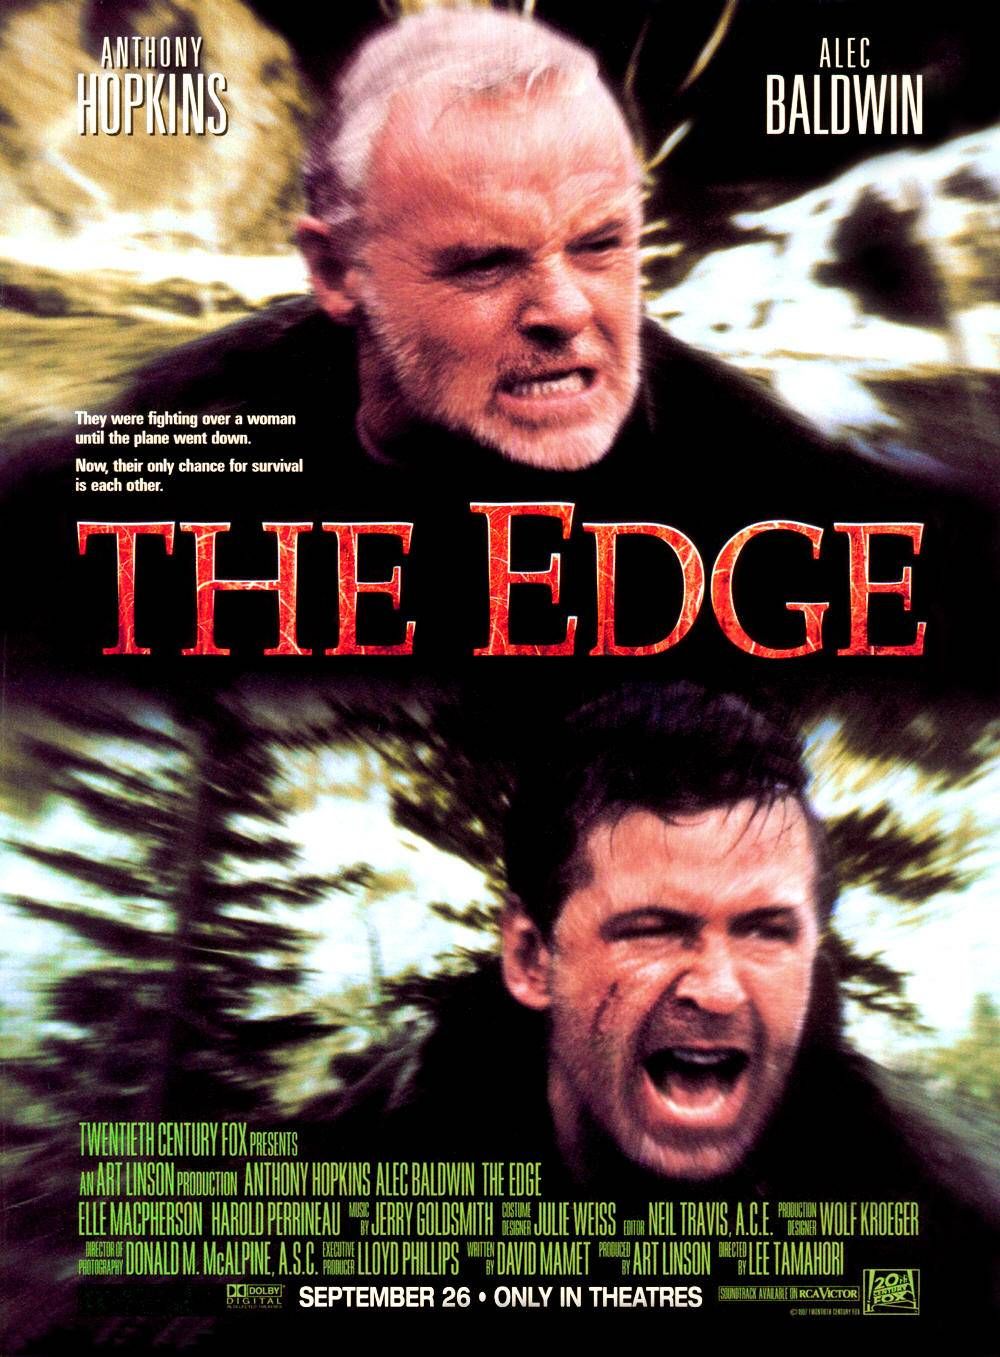 The Edge (1997) ดิบล่าดิบ Anthony Hopkins